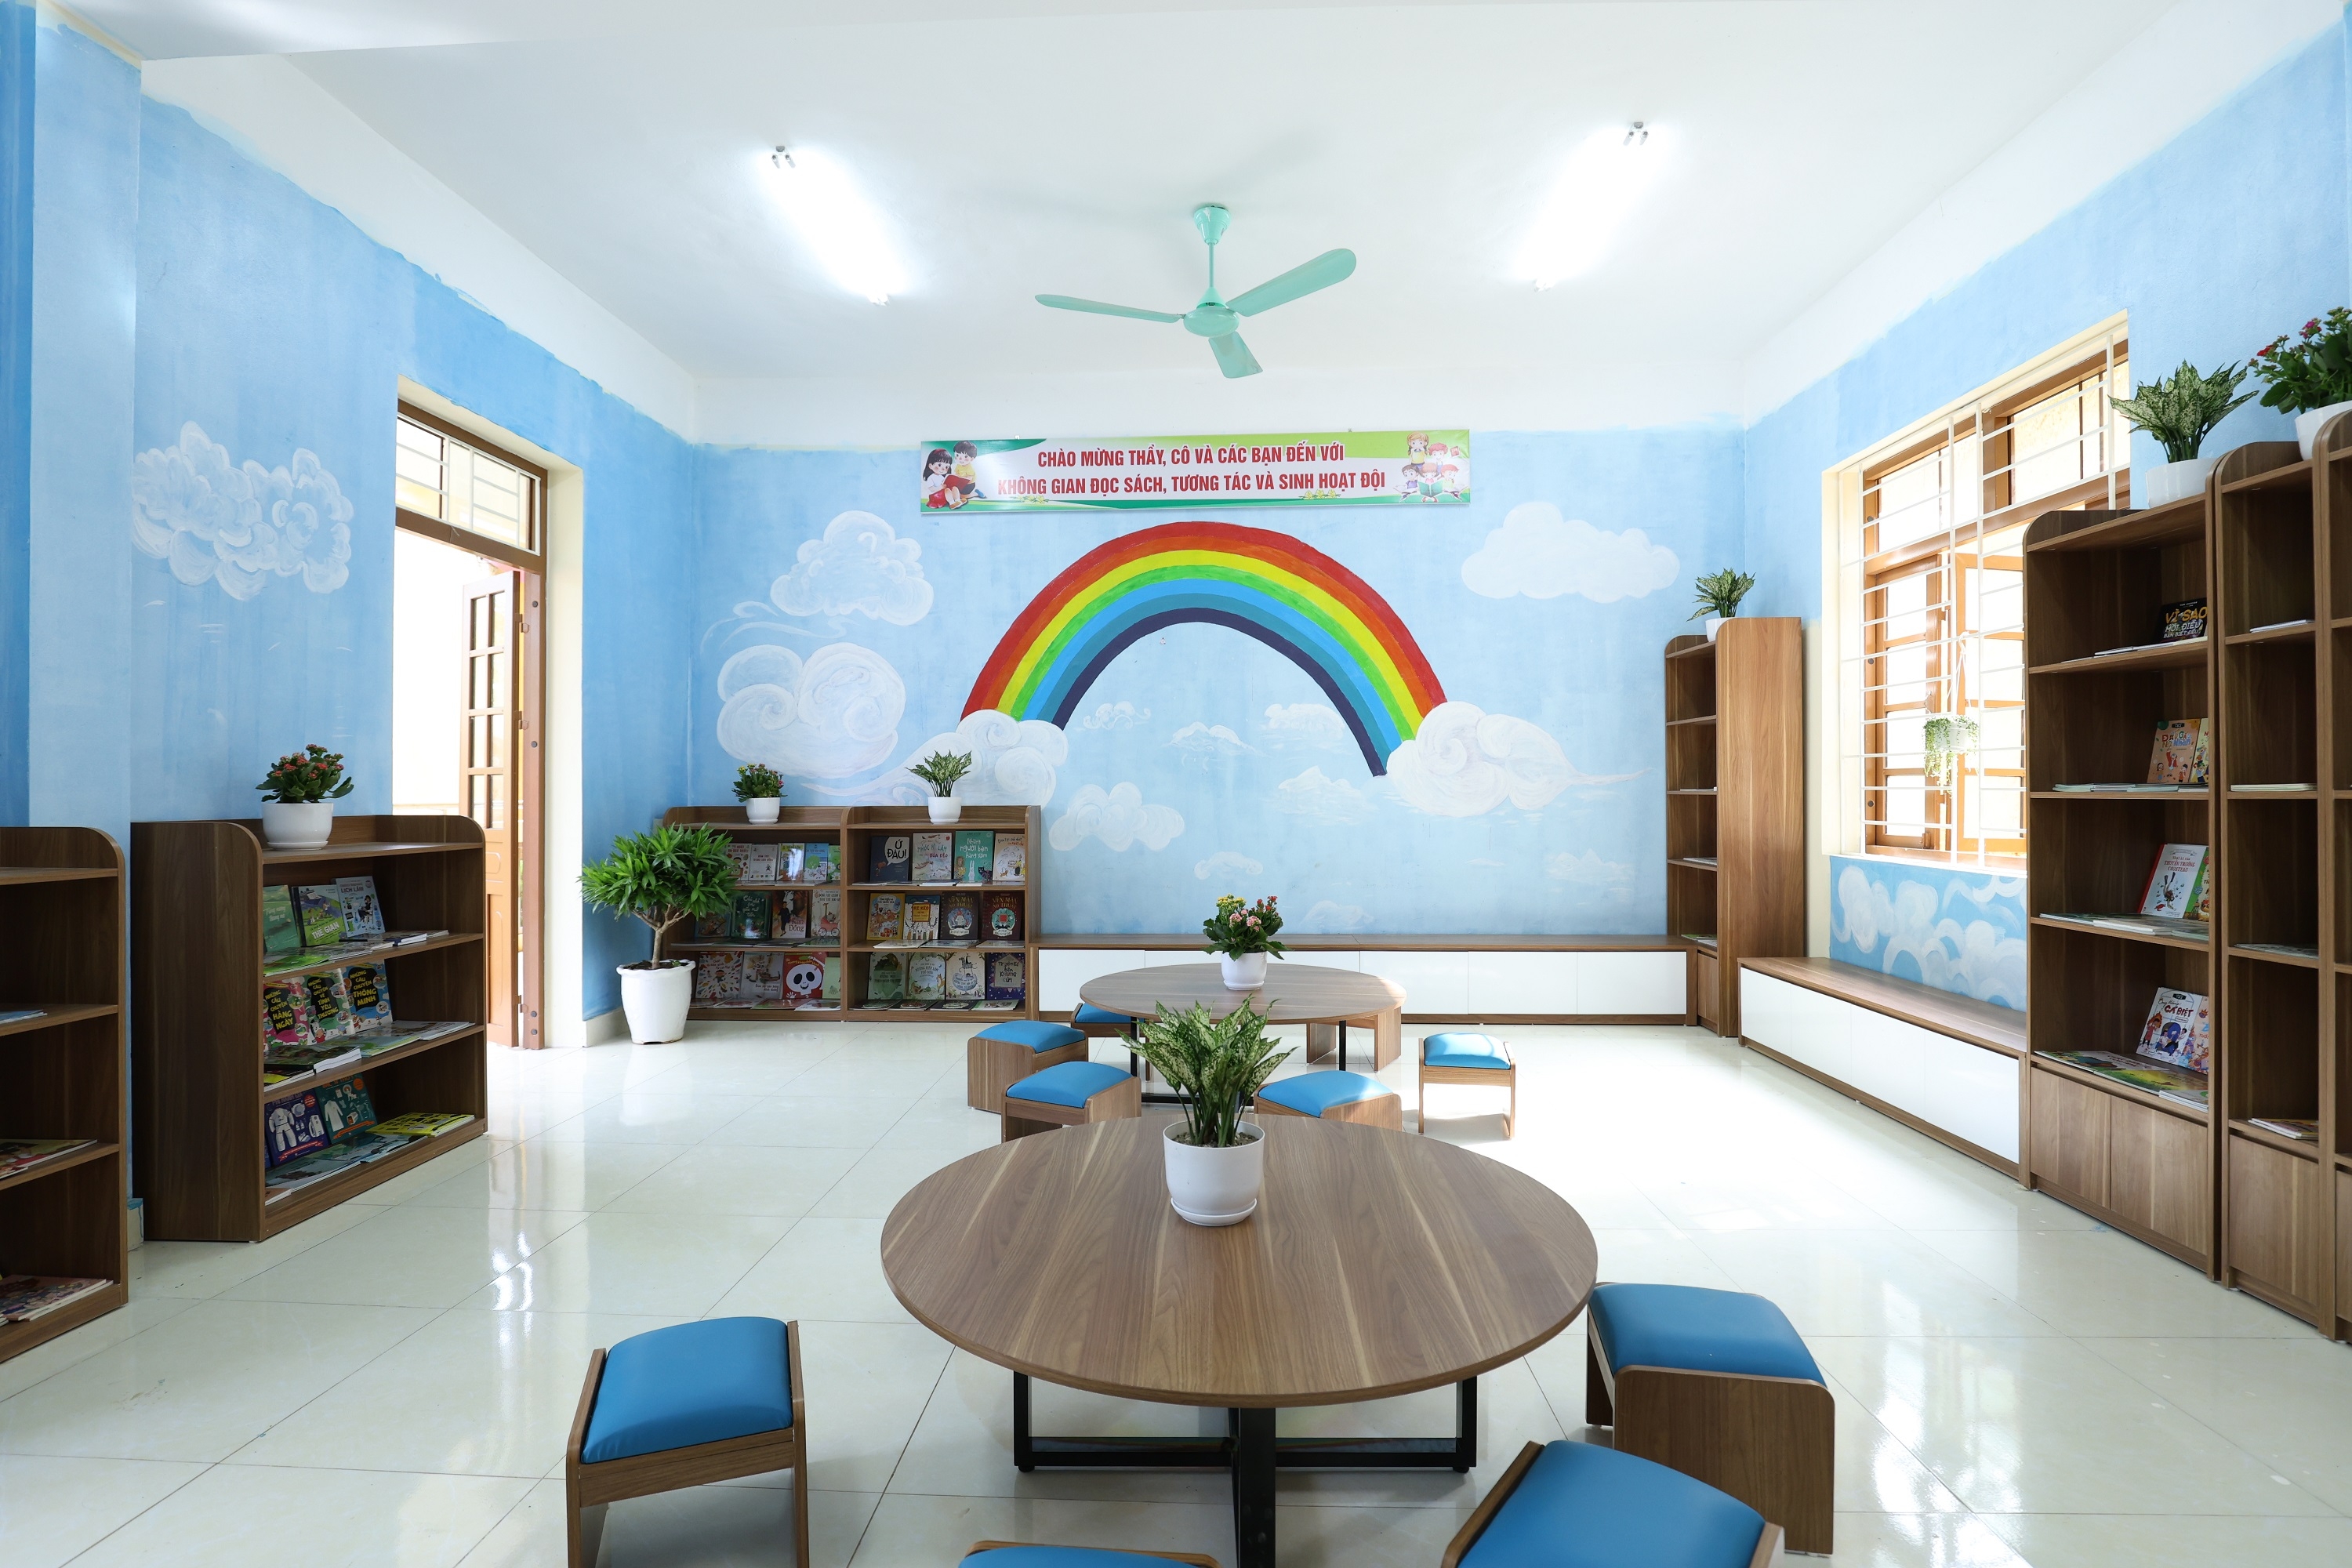 “Thư viện xanh” cho trẻ em vùng cao đặc biệt khó khăn